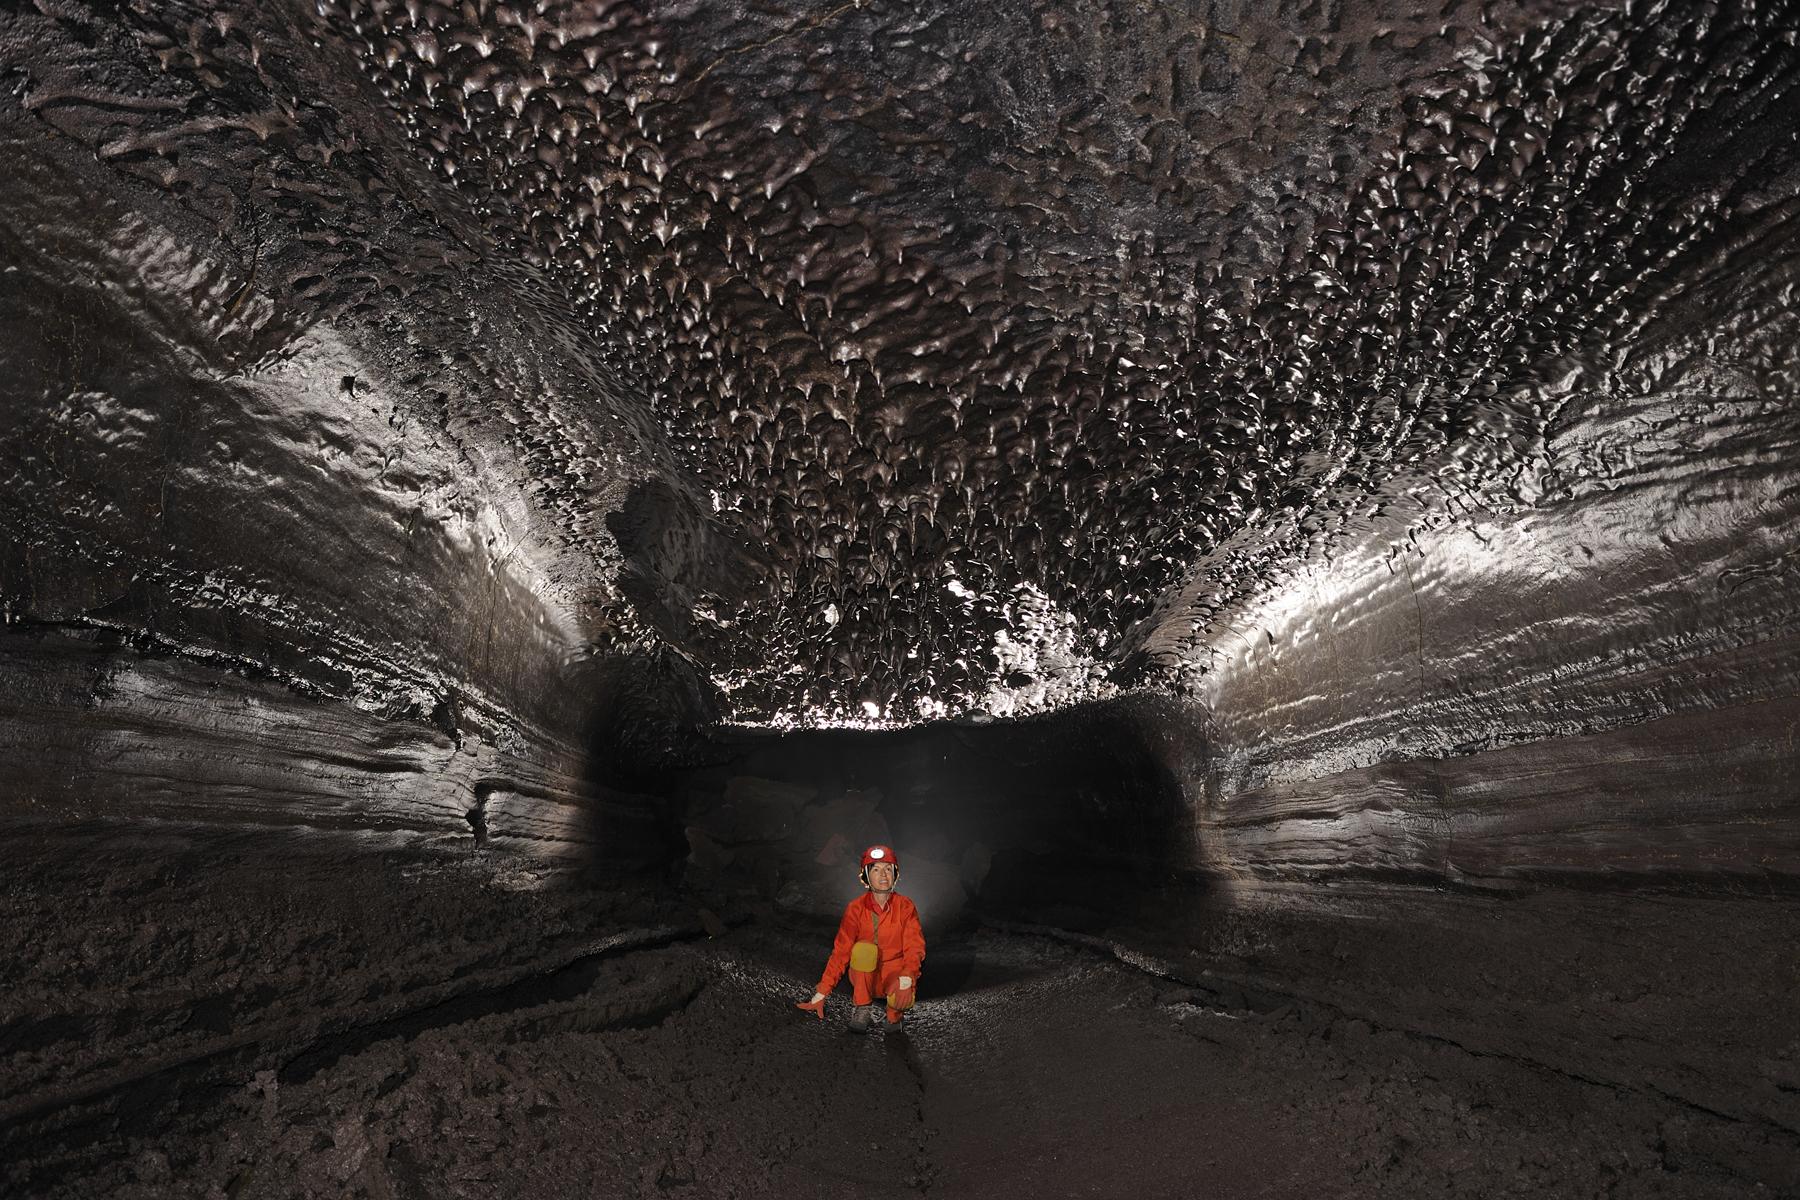 Hawaï (USA) - Tube de lave - Kazamura cave - Galerie avec "chocolate drops" au plafond (stalactites de lave fondue)